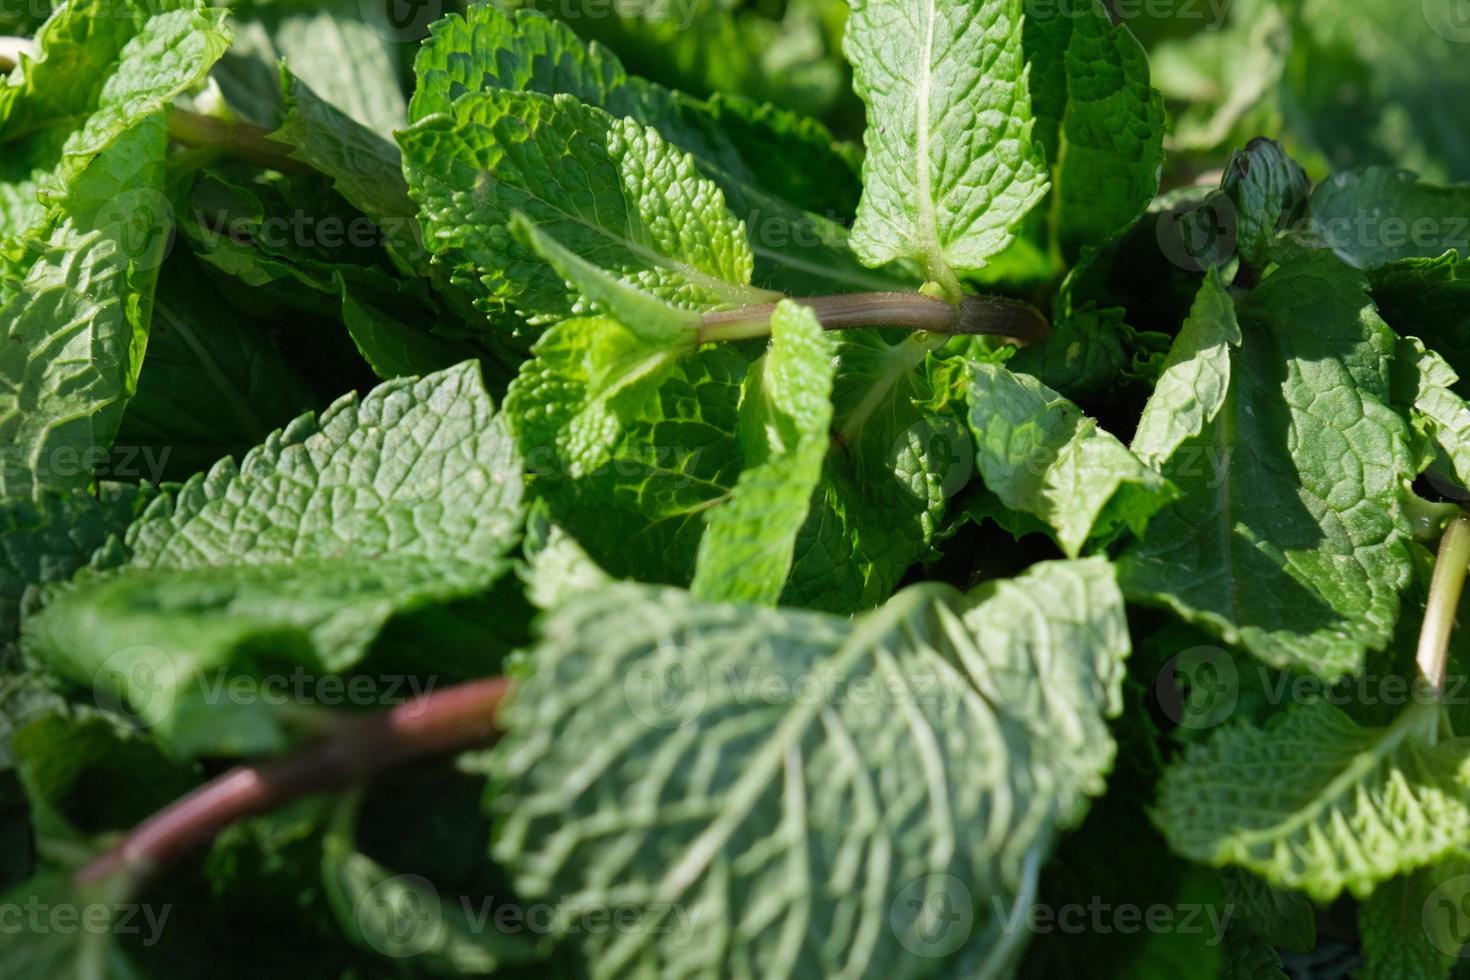 naturlig grön mynta löv i de sommar trädgård, vibrerande pappersmint blad närbild, färsk arom grönmynta, grönska för mat och dryck, växt detalj, mentol ingrediens bakgrund. foto